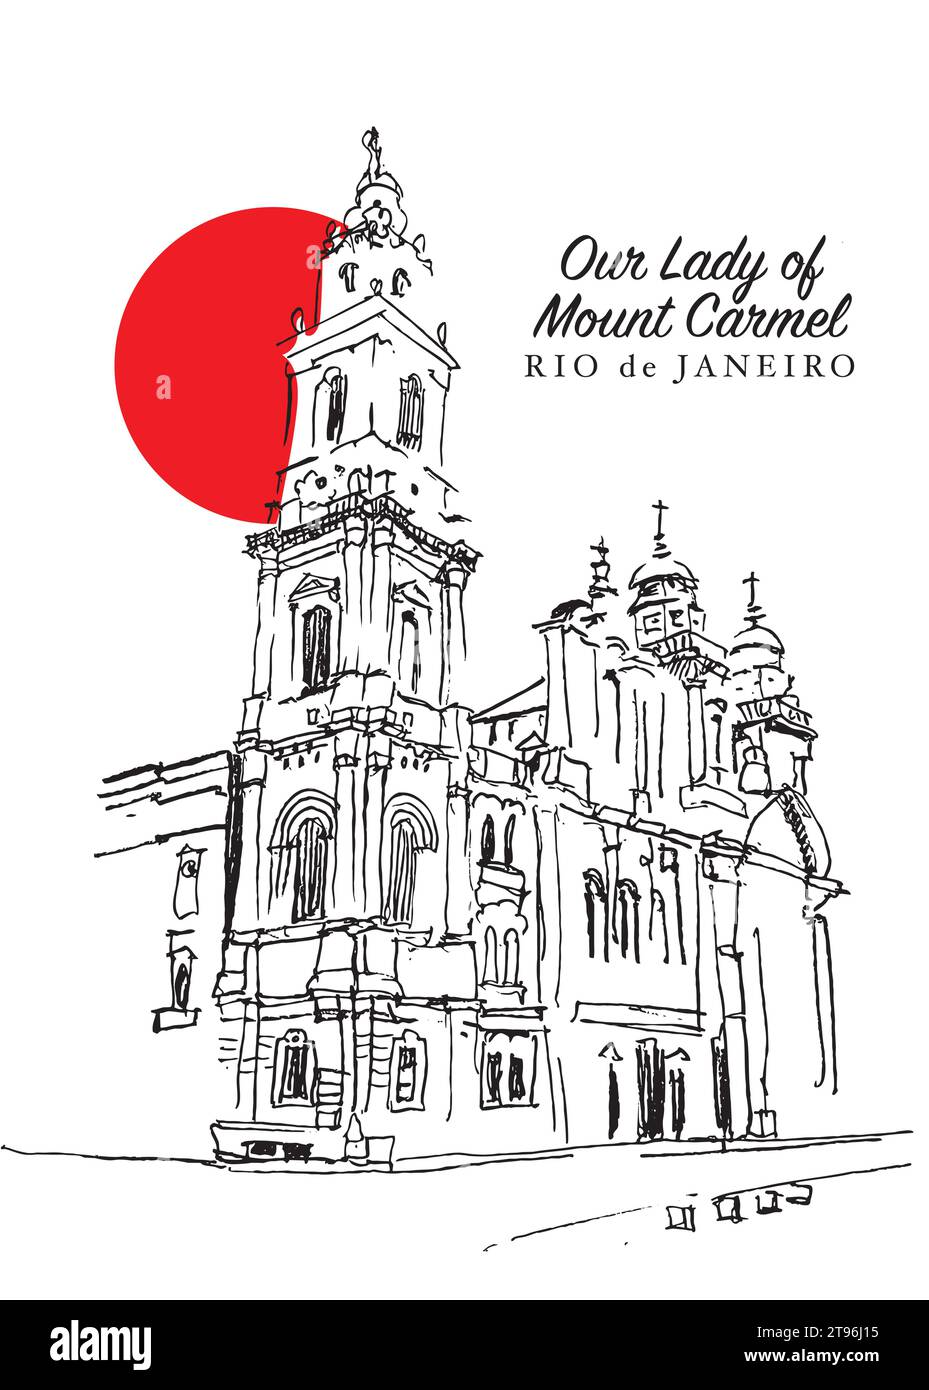 Disegno vettoriale disegnato a mano della cattedrale di nostra Signora del Monte Carmelo a Rio de Janeiro, Brasile. Illustrazione Vettoriale